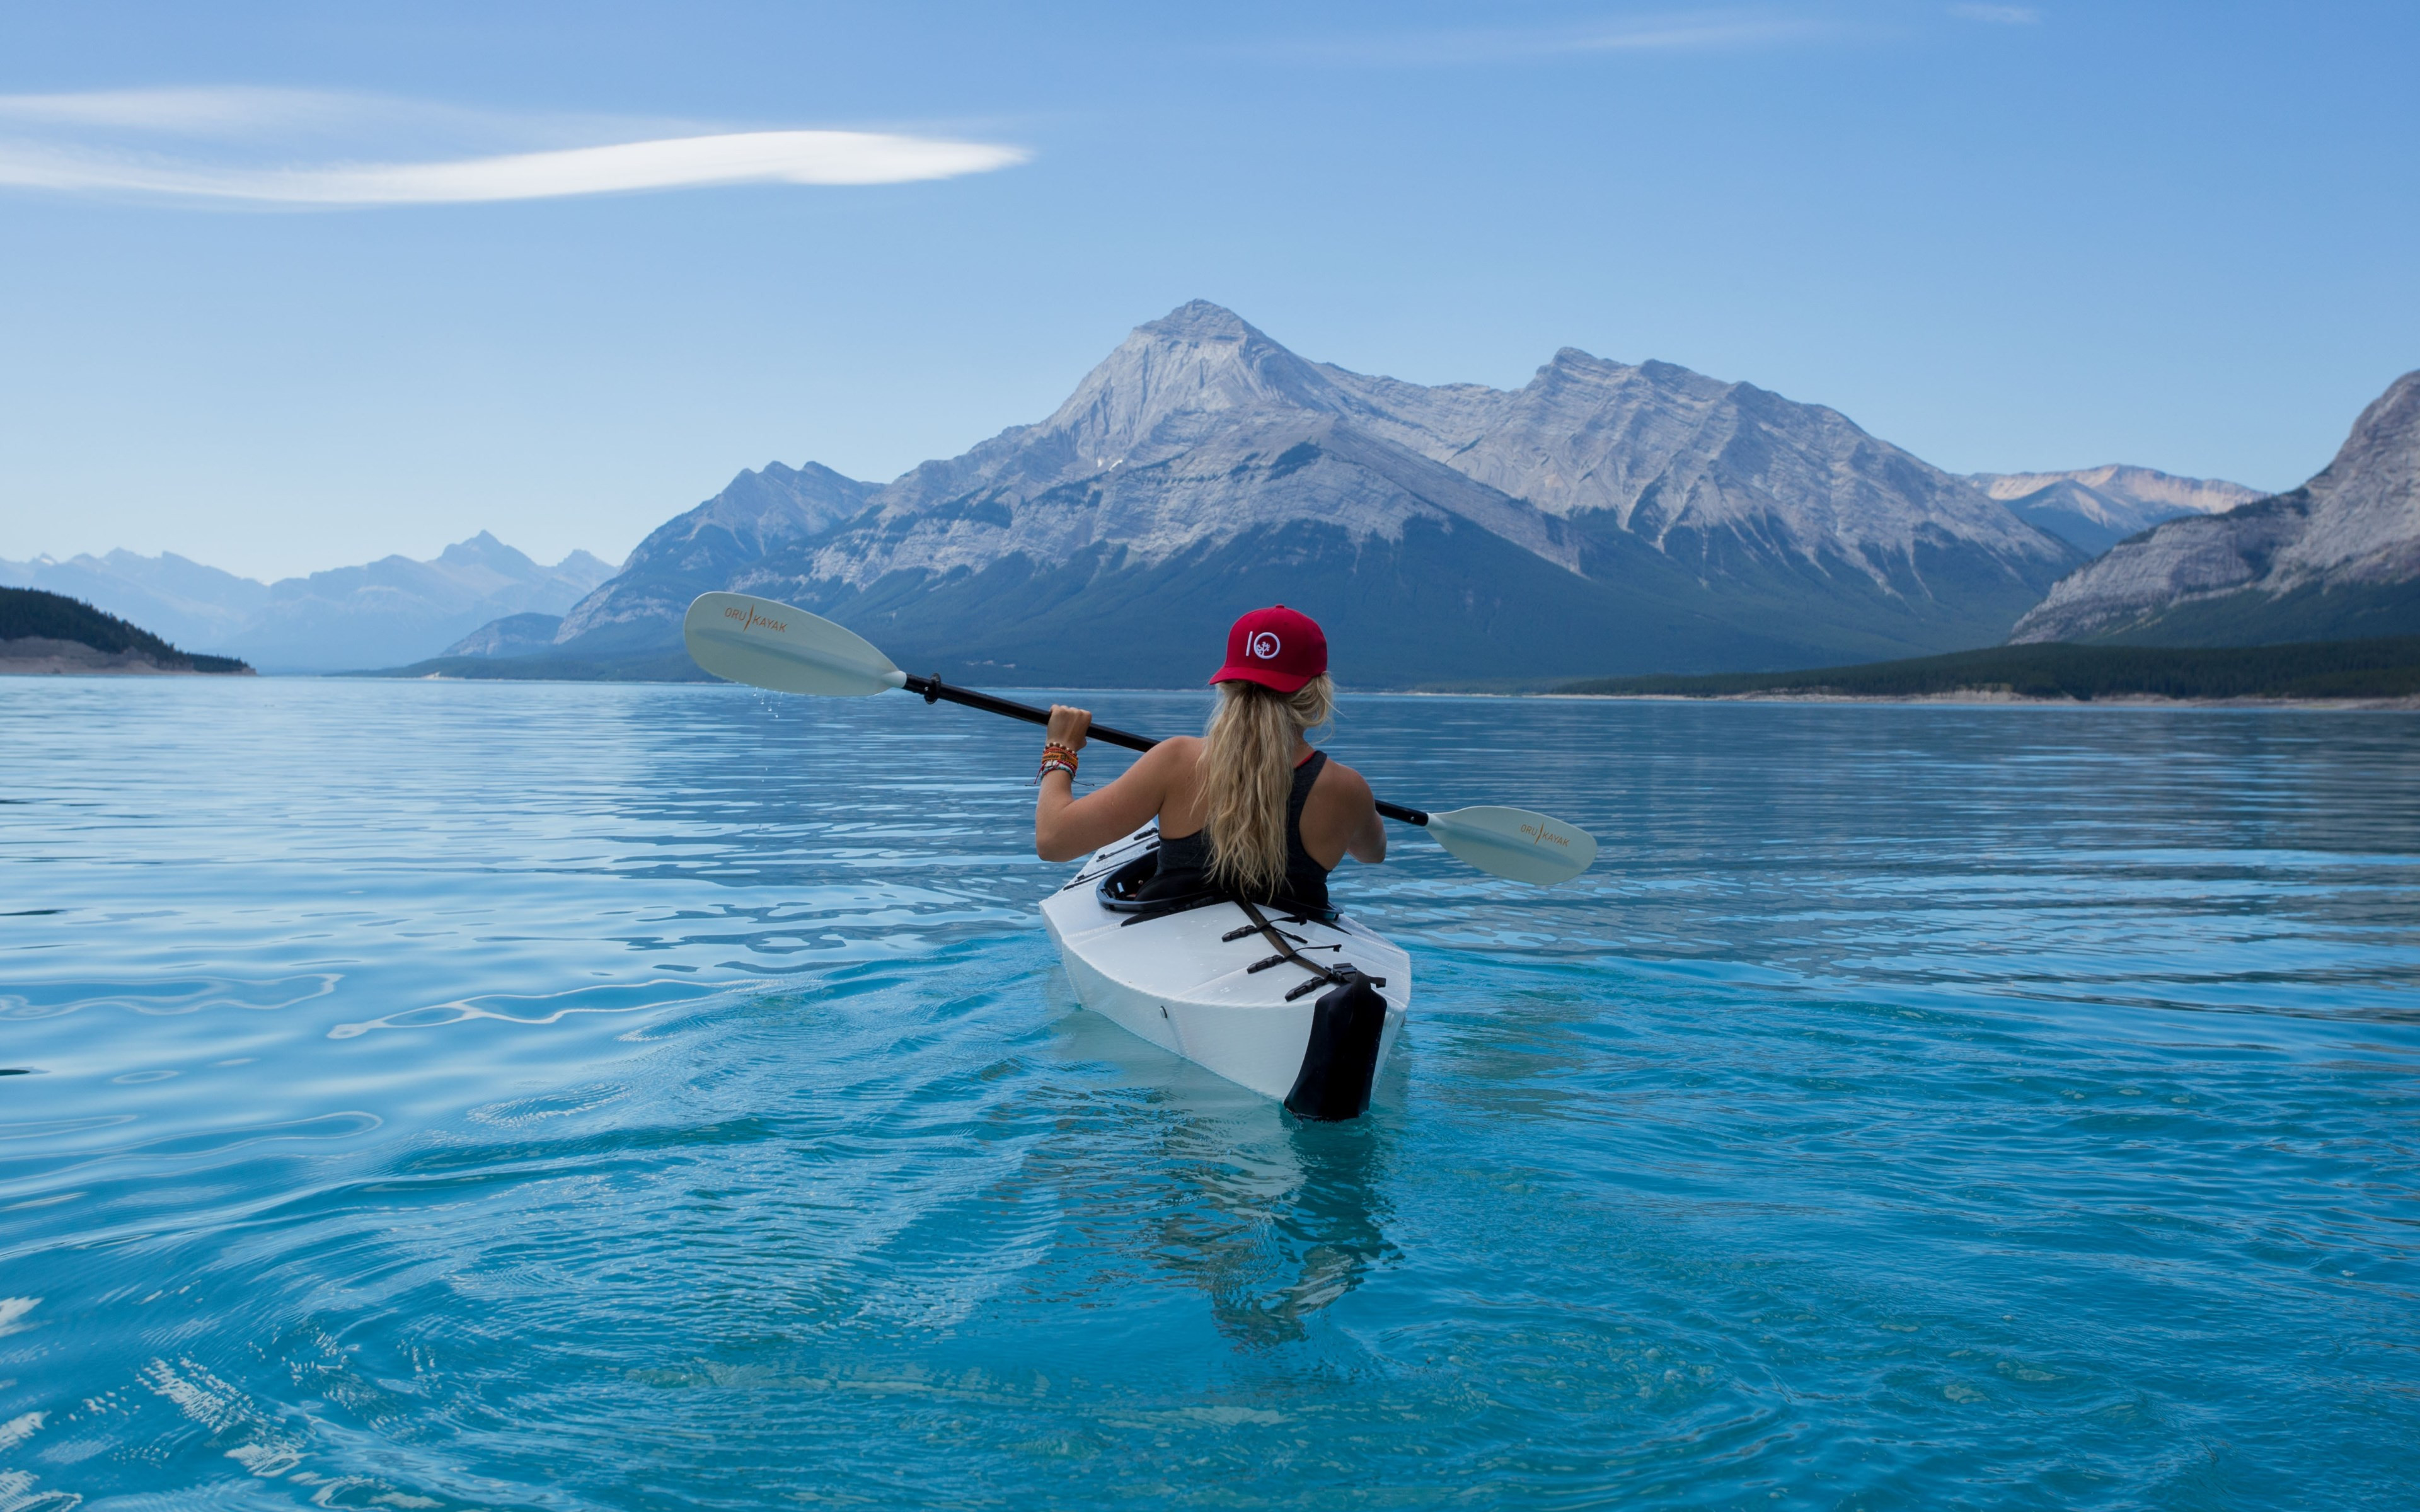 Trip with kayak on lake wallpaper 3840x2400